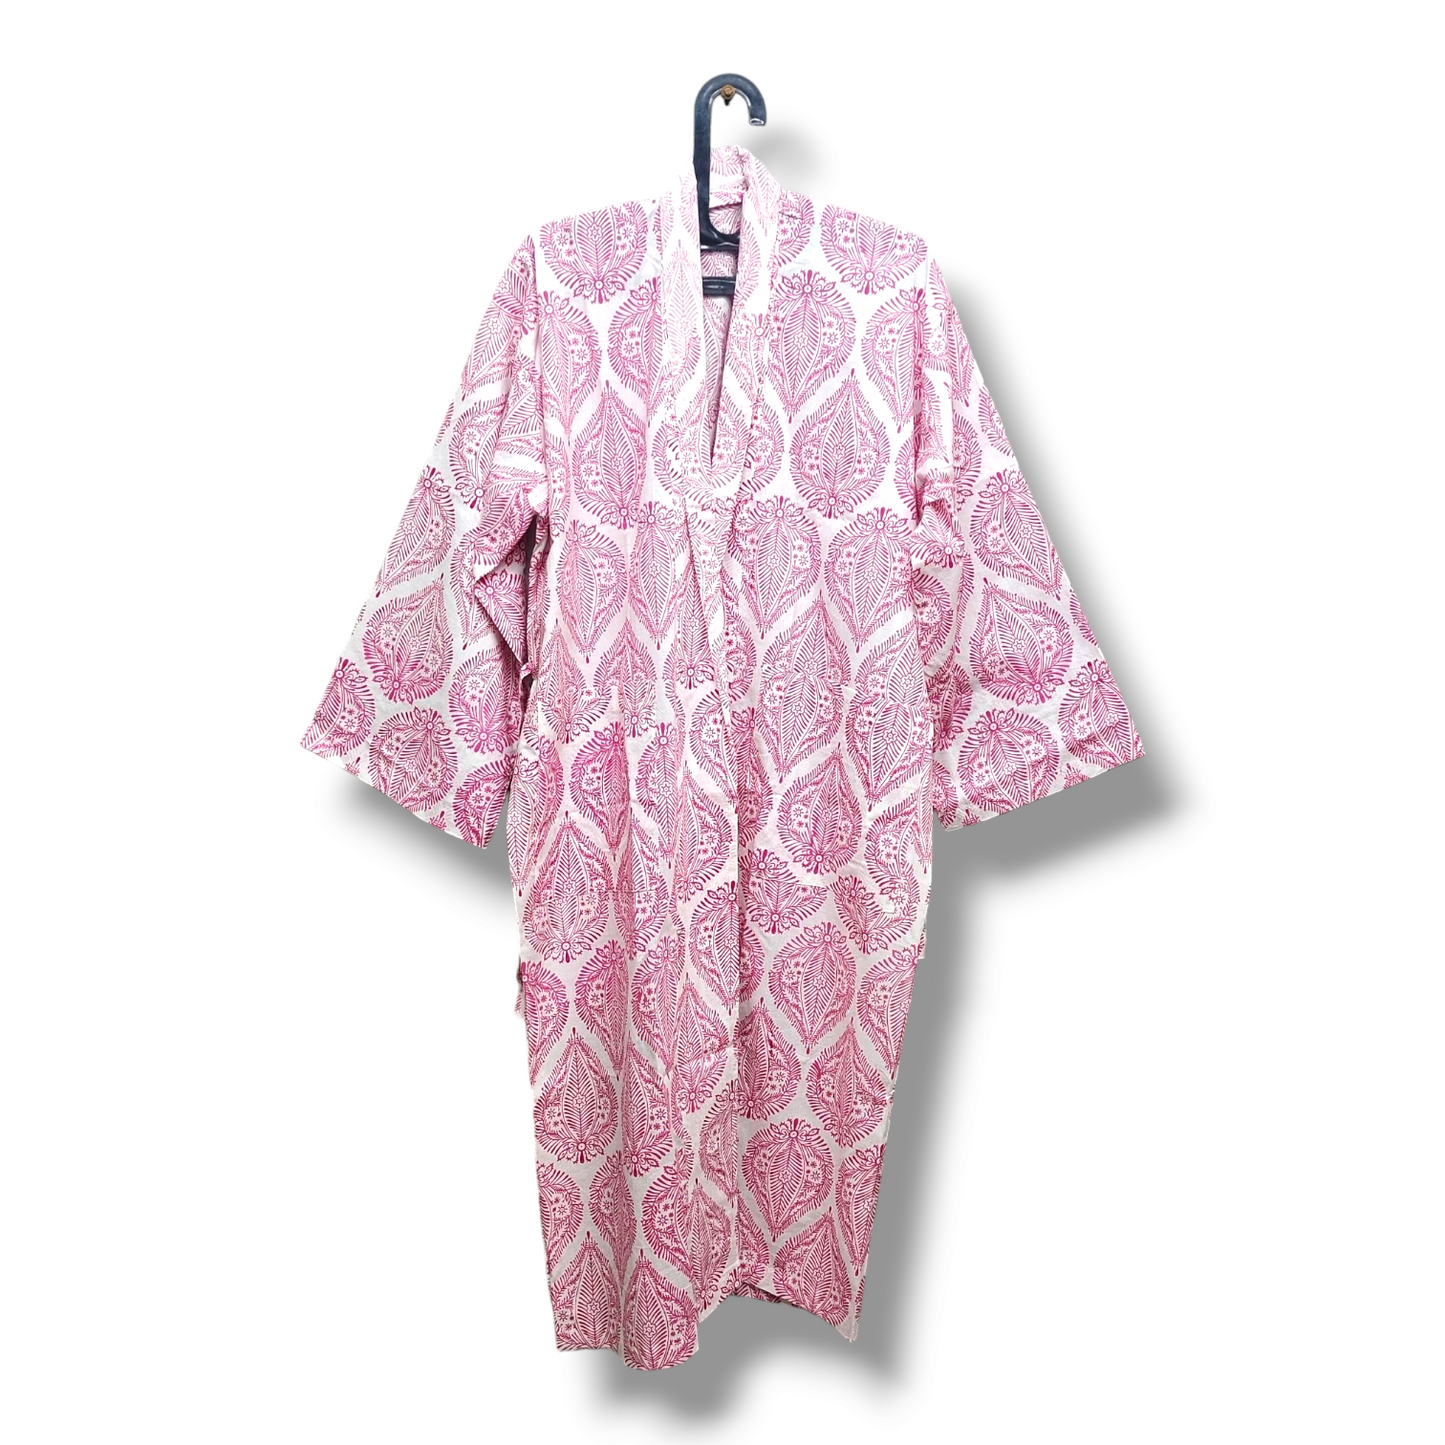 Cotton Hand Printed Kimono Robe Palladio Pink